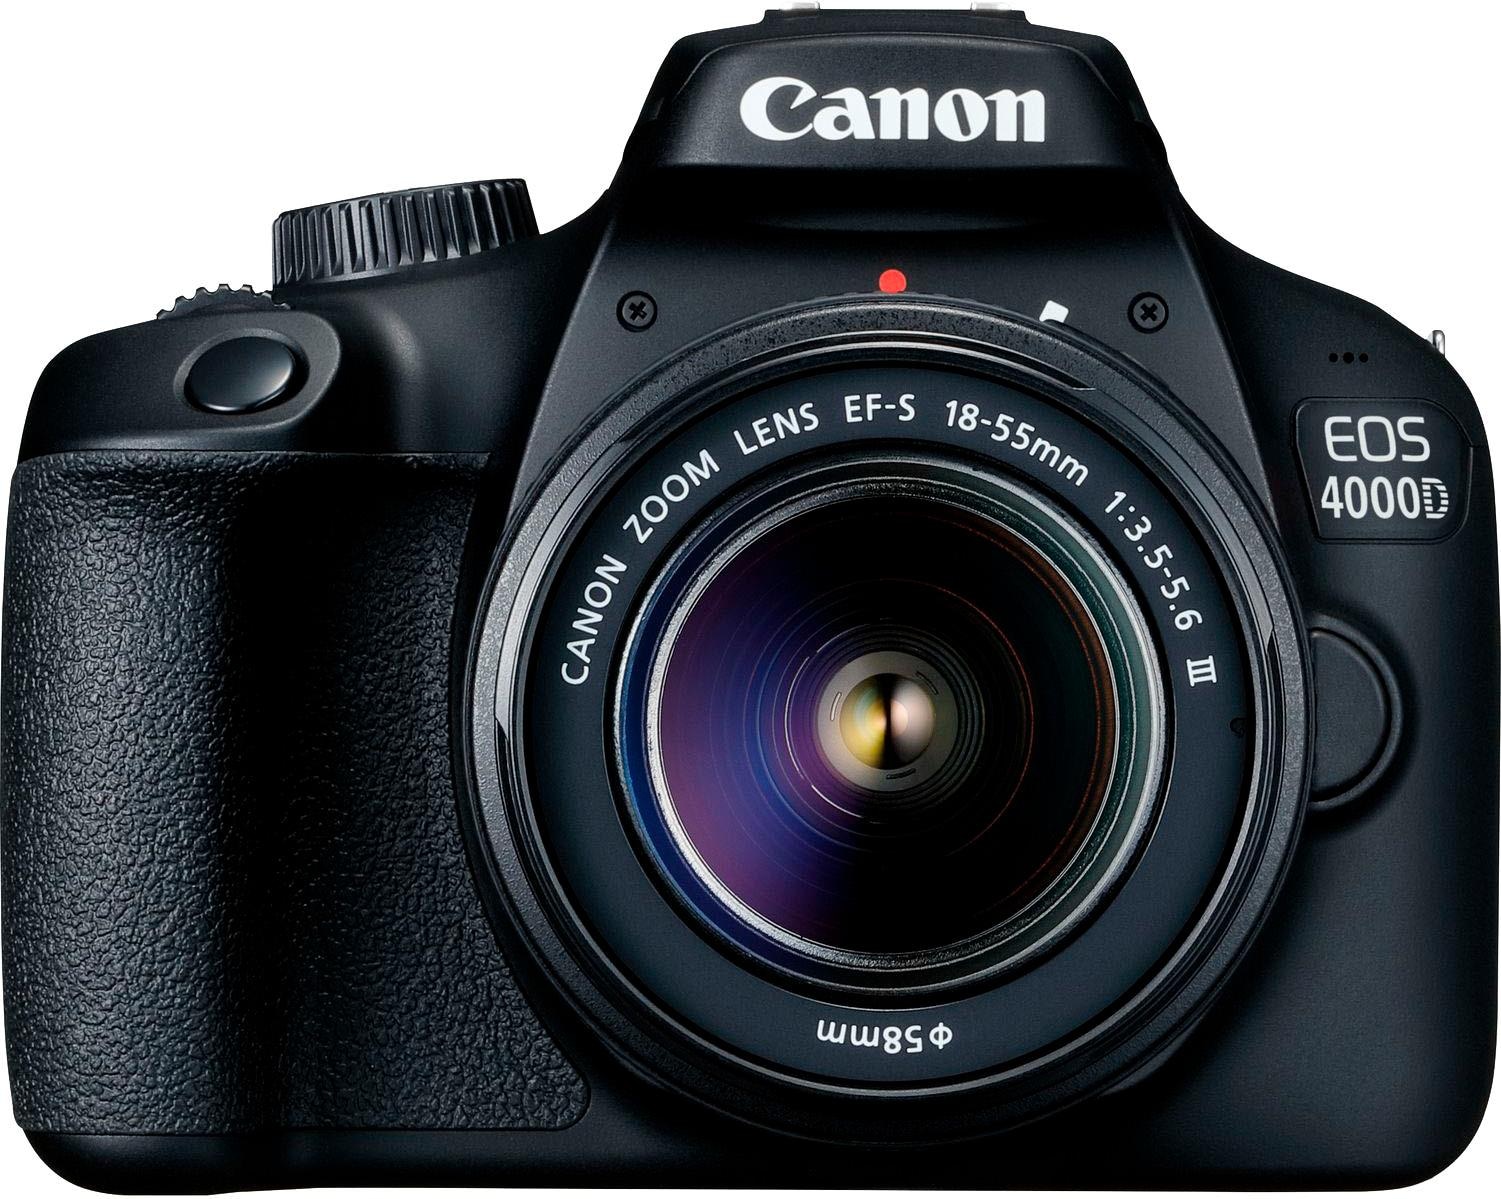 Canon Spiegelreflexkamera »EOS MP, III«, EF-S f/3.5-5.6 WLAN 18-55mm III, (Wi-Fi) 18 4000D bei 18-55mm